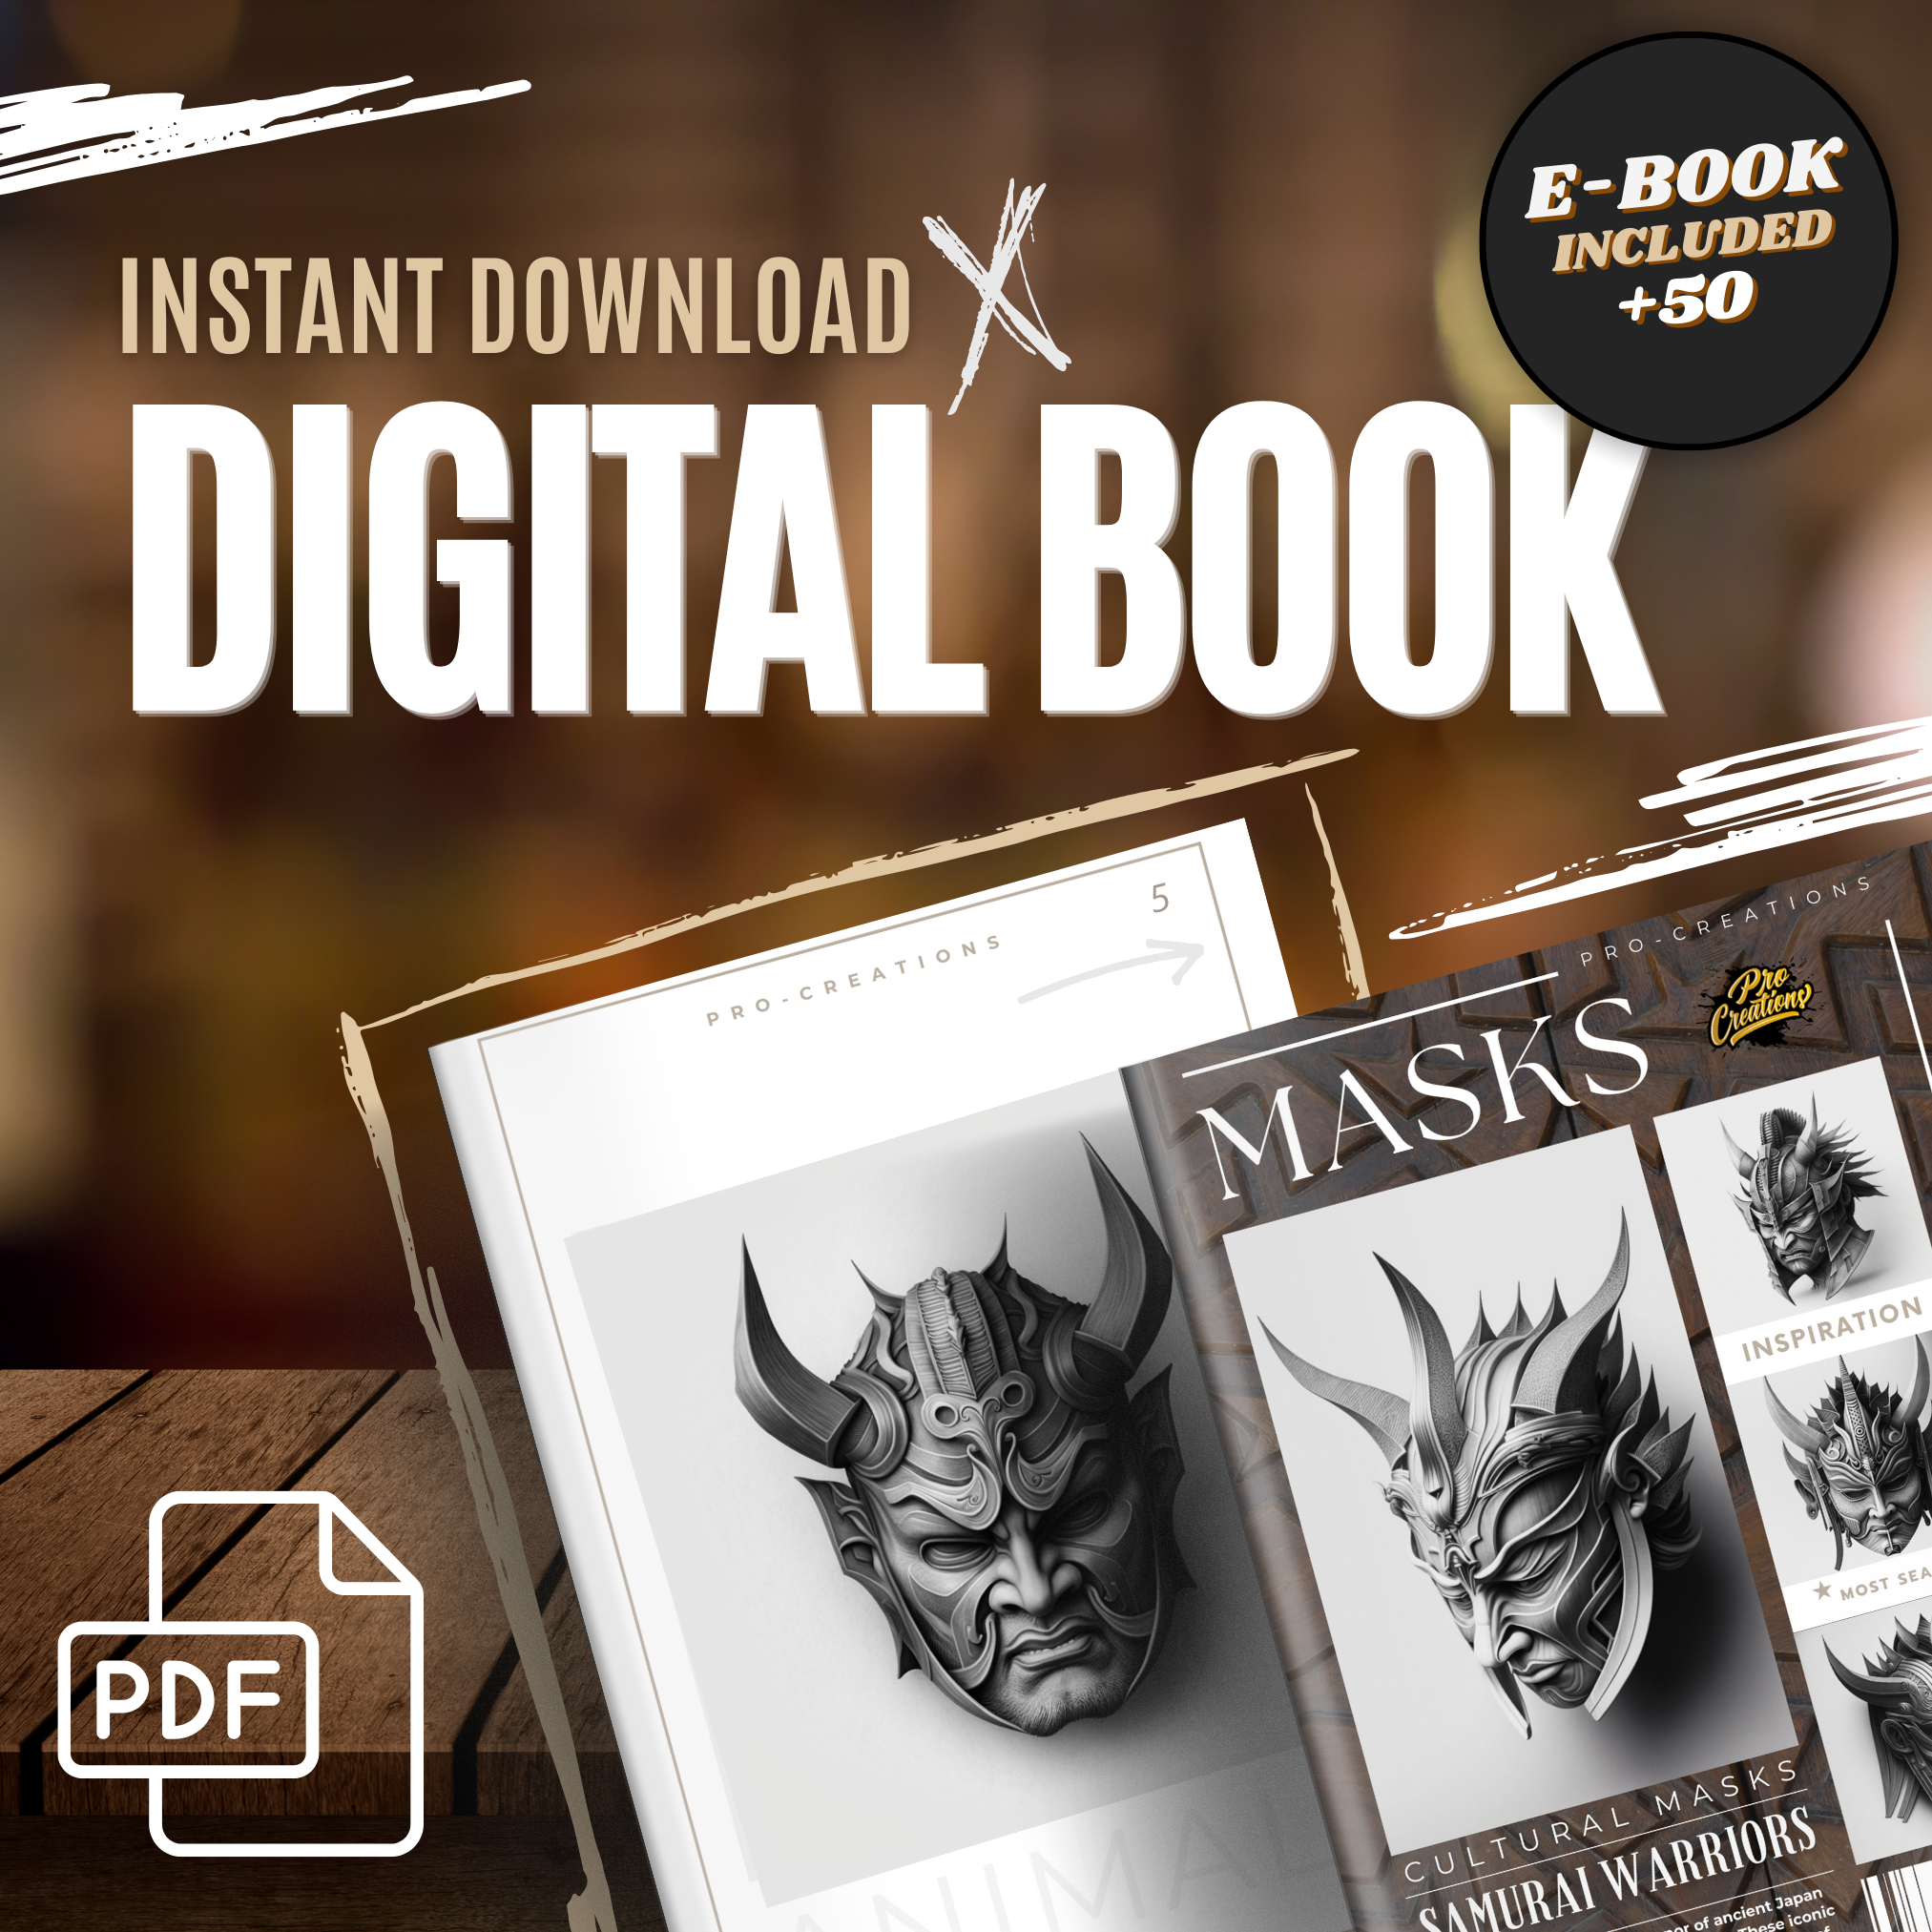 Samurai Warrior Masks Digital Reference Design Collection: 50 Procreate & Sketchbook Images